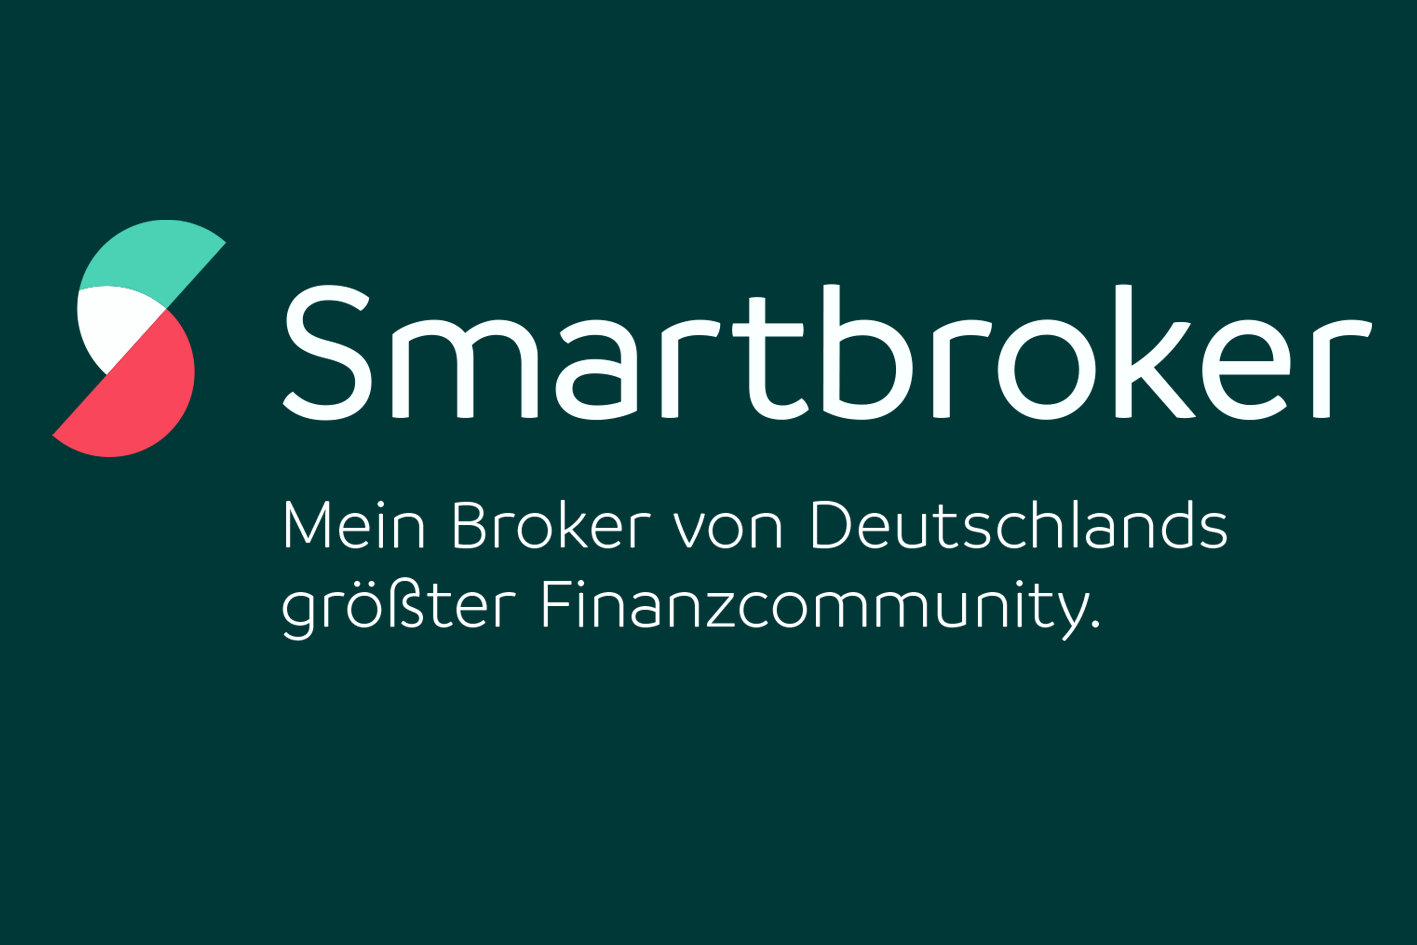 Smartbroker - Broker von Deutschlands größter Finanzcommunity